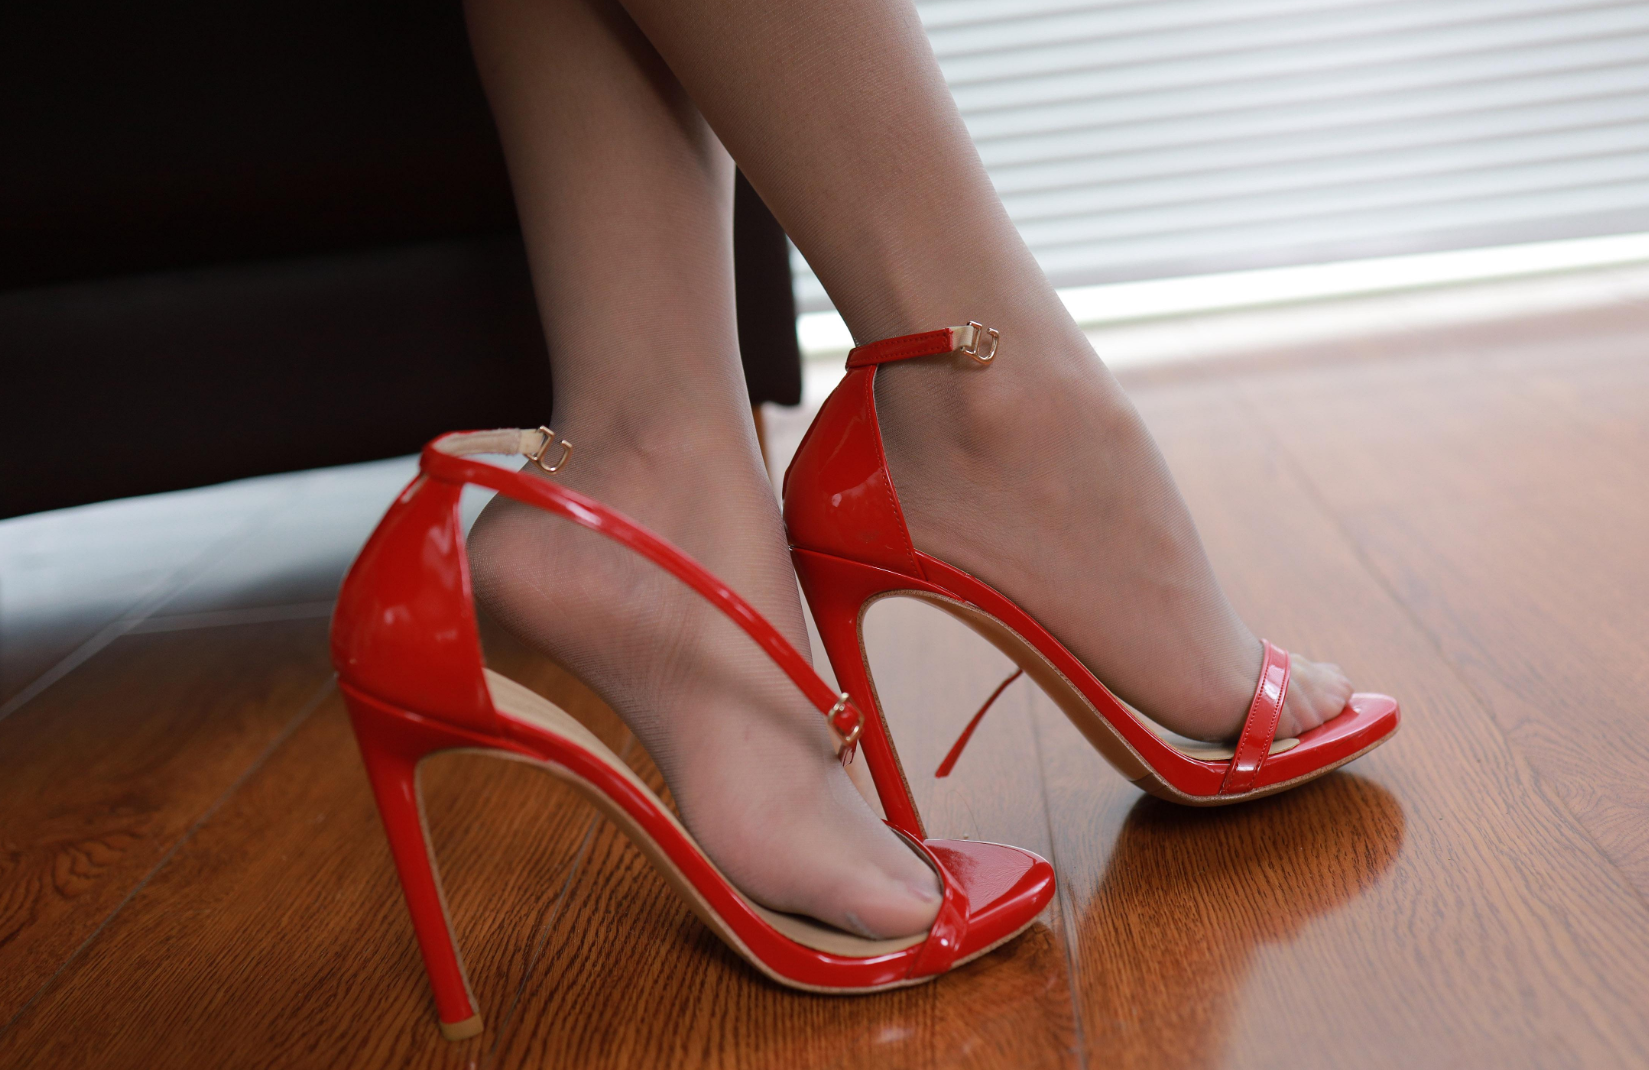 红色高跟凉鞋搭配肉色丝袜,简直是太性感了